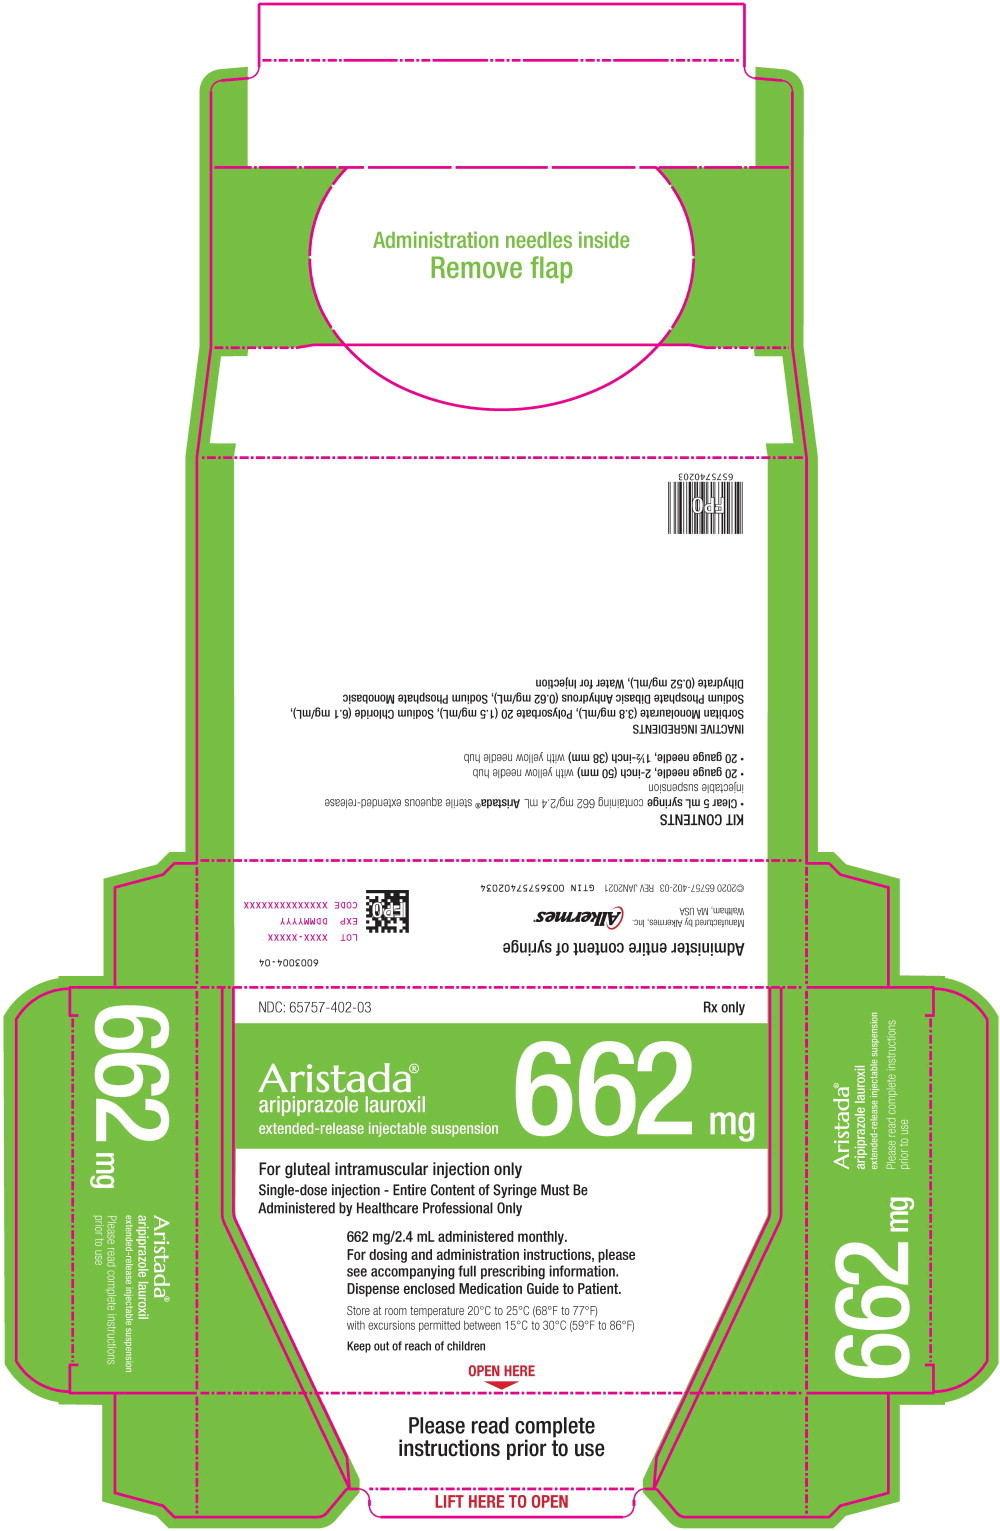 Principal Display Panel - 662 mg/2.4 mL Carton Label
